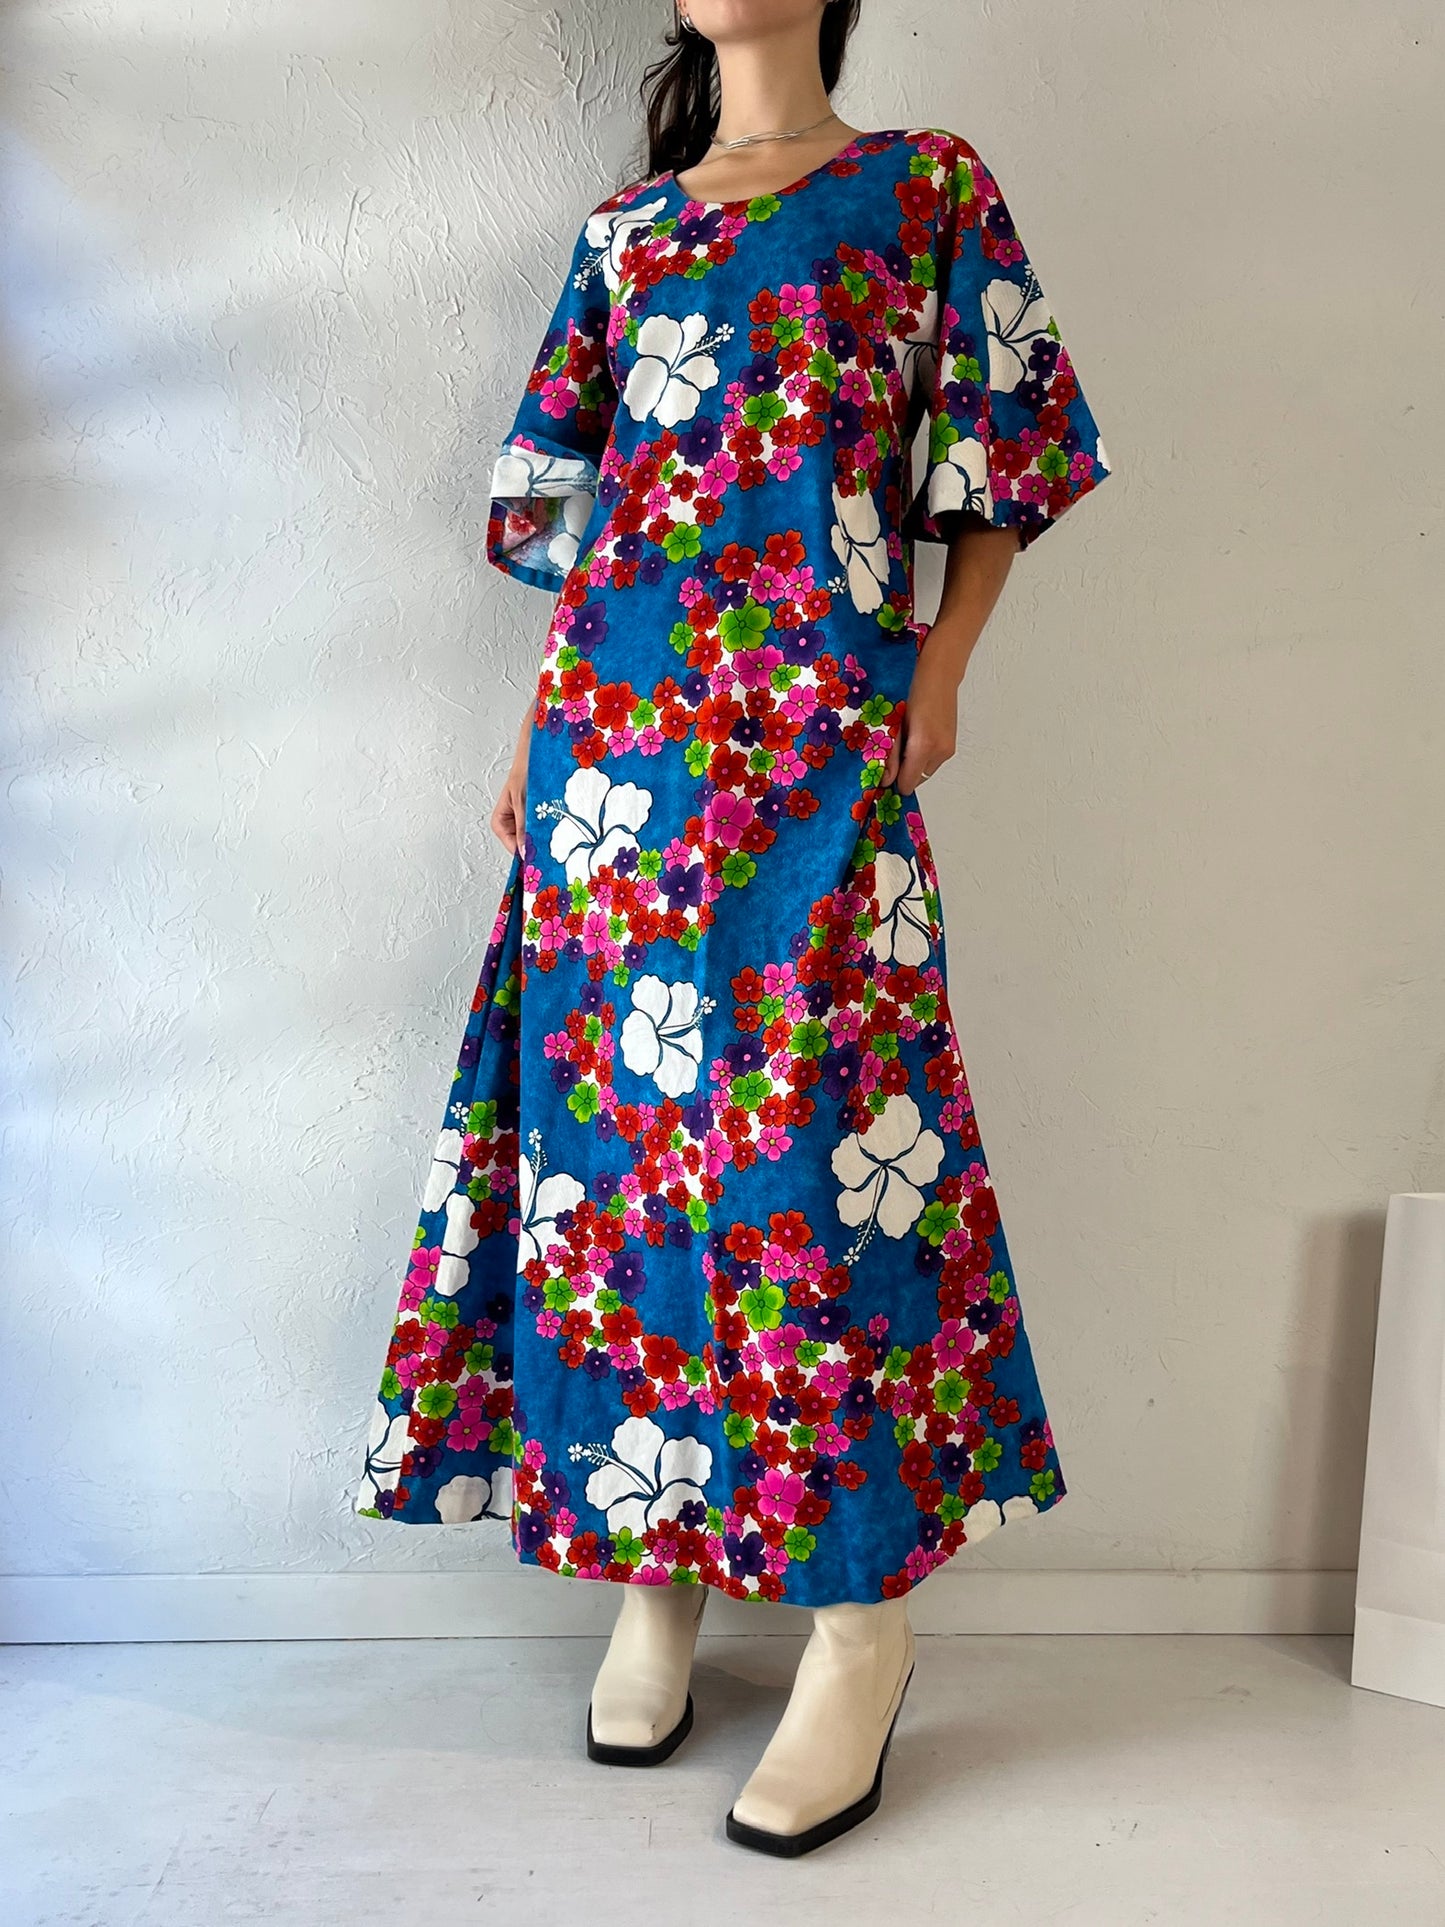 70s 'Hilo Hattie' Floral Print Cotton Maxi Dress / Medium